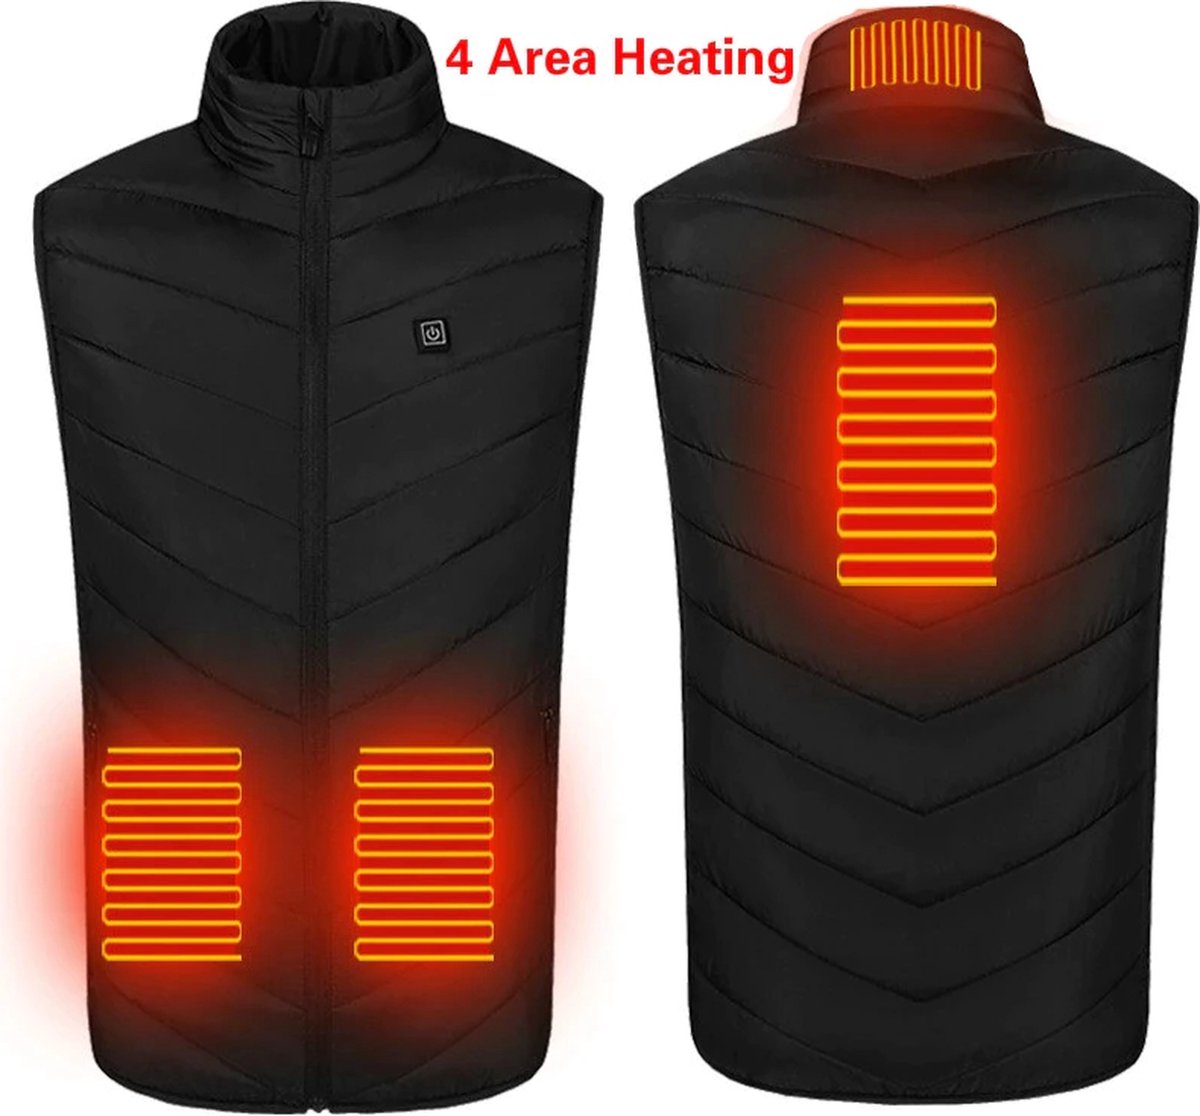 verwarmde bodywarmer - verwarmd vest - warmte vest - elektrisch verwarmd vest - verwarmde kleding - verwarmde jas - thermo vest - L